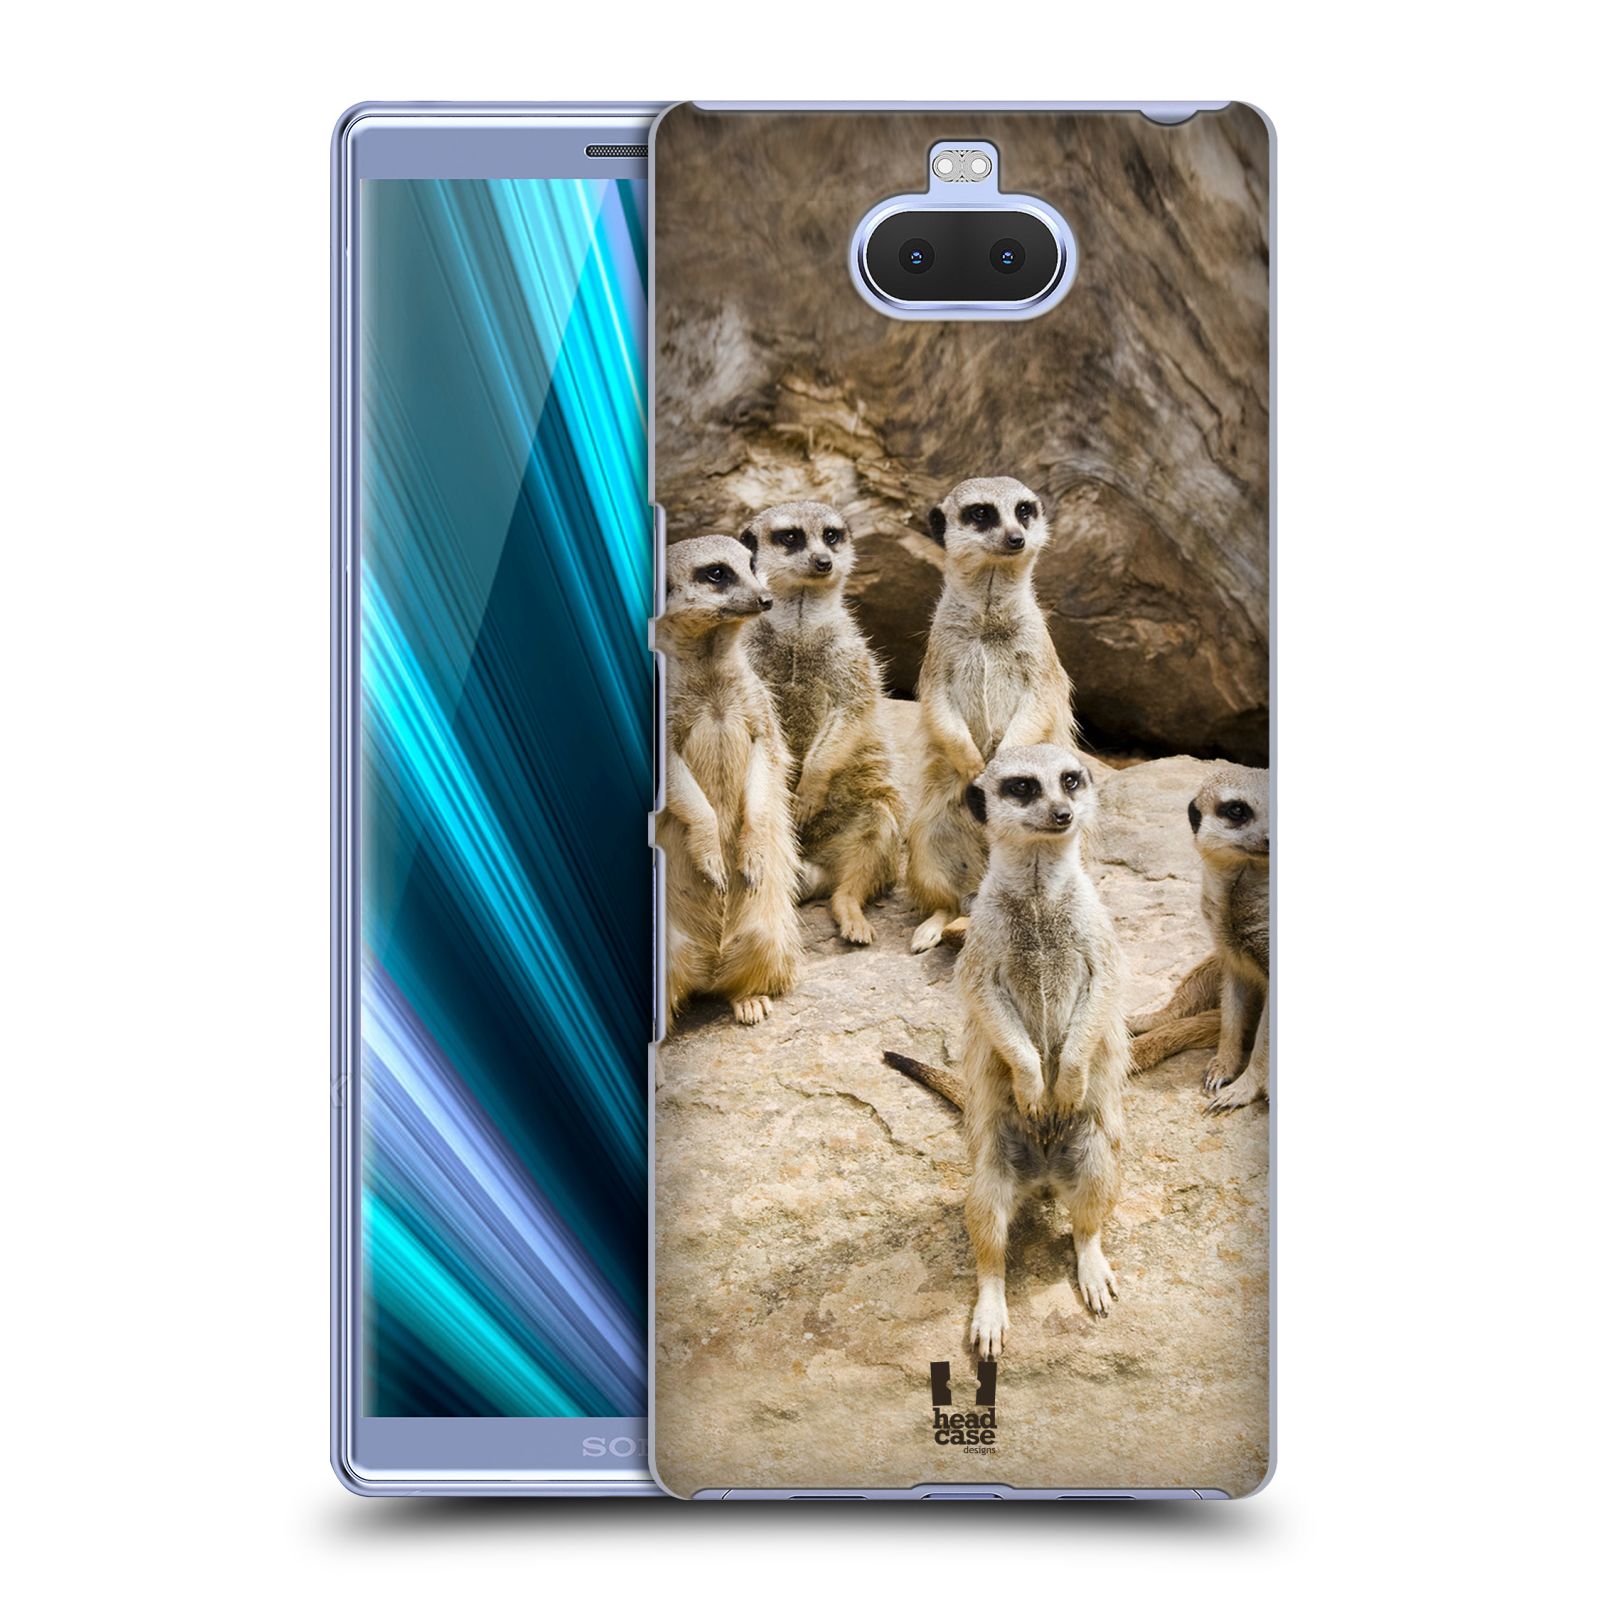 Zadní obal pro mobil Sony Xperia 10 ULTRA - HEAD CASE - Svět zvířat roztomilé surikaty